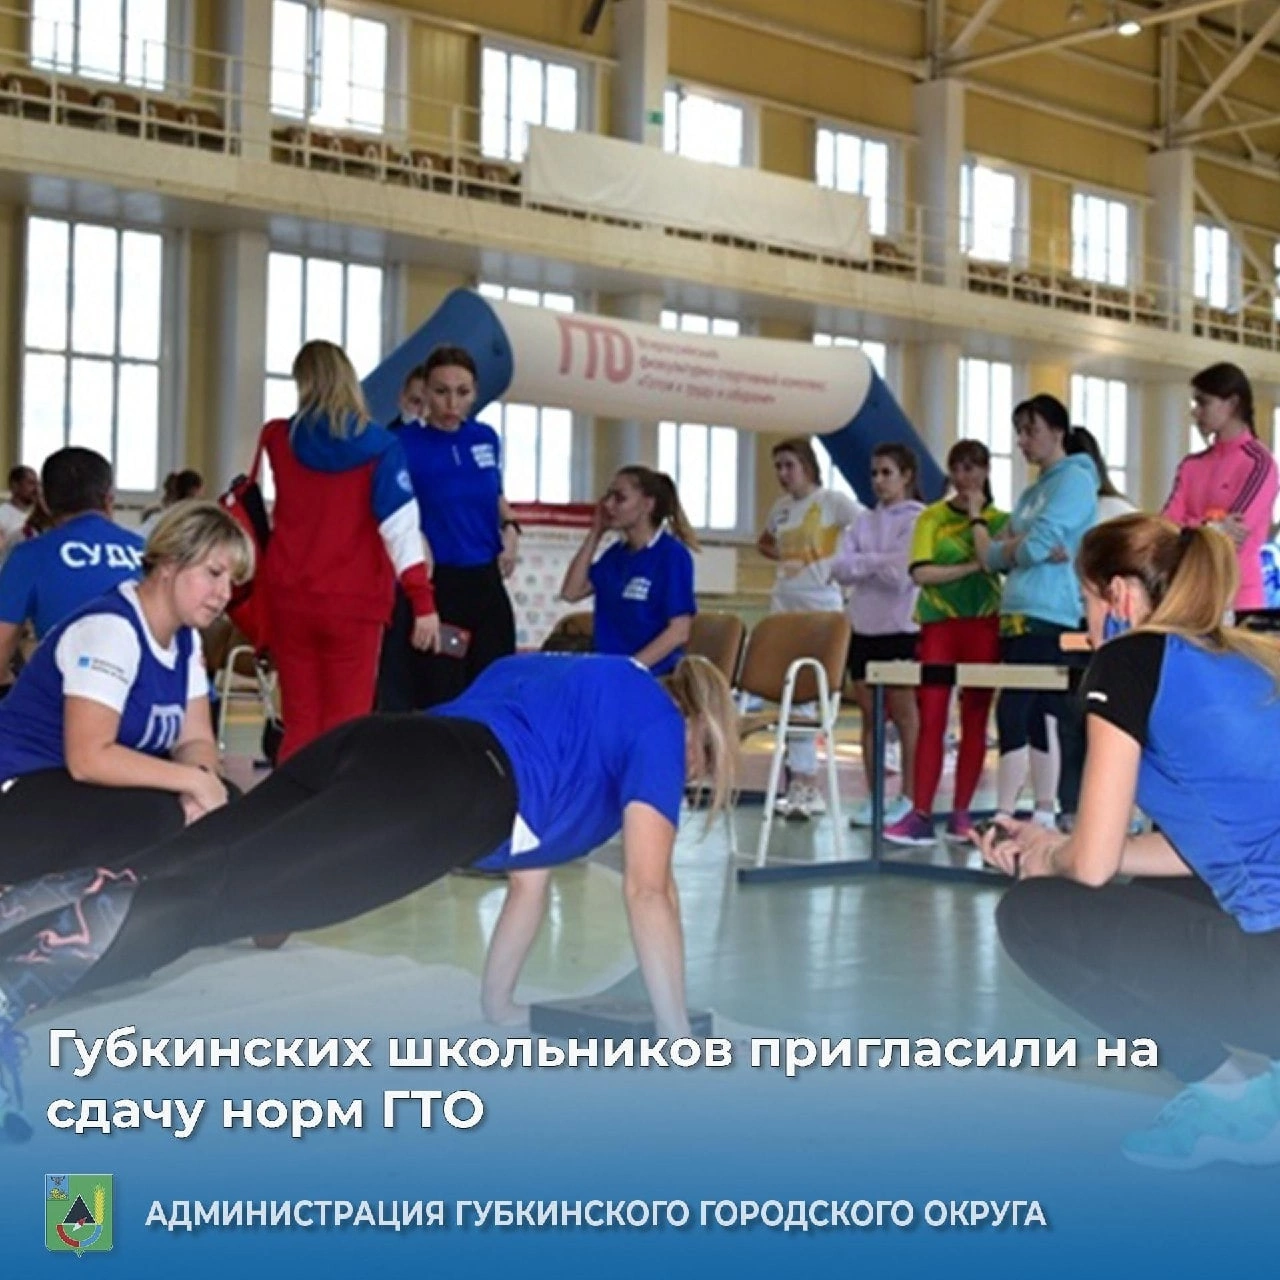 Губкинских школьников пригласили на сдачу норм ГТО.